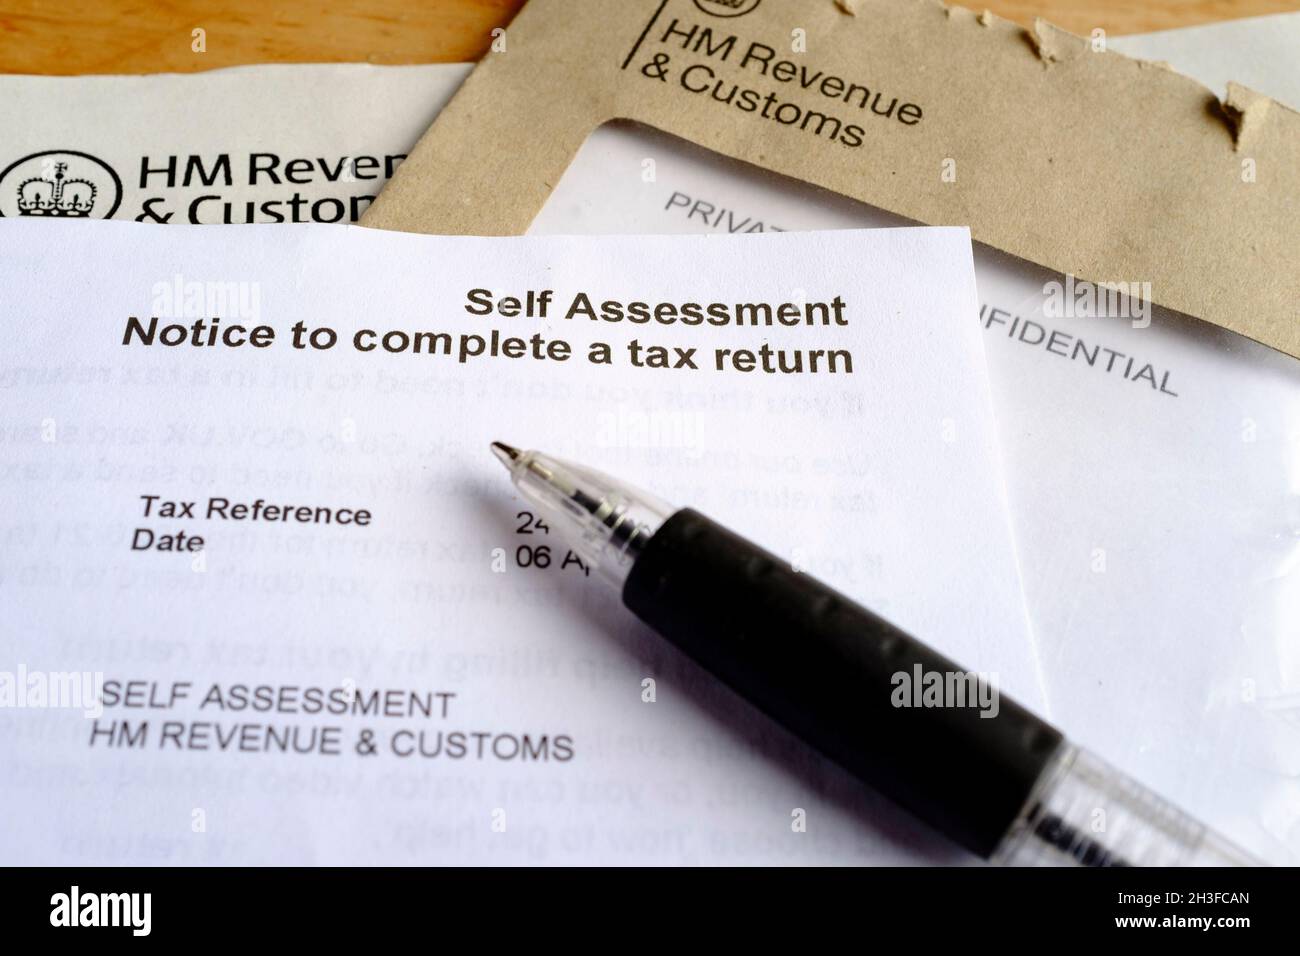 HM Revenue and Customs Self Assessment tax Return Notice, Regno Unito. Foto Stock